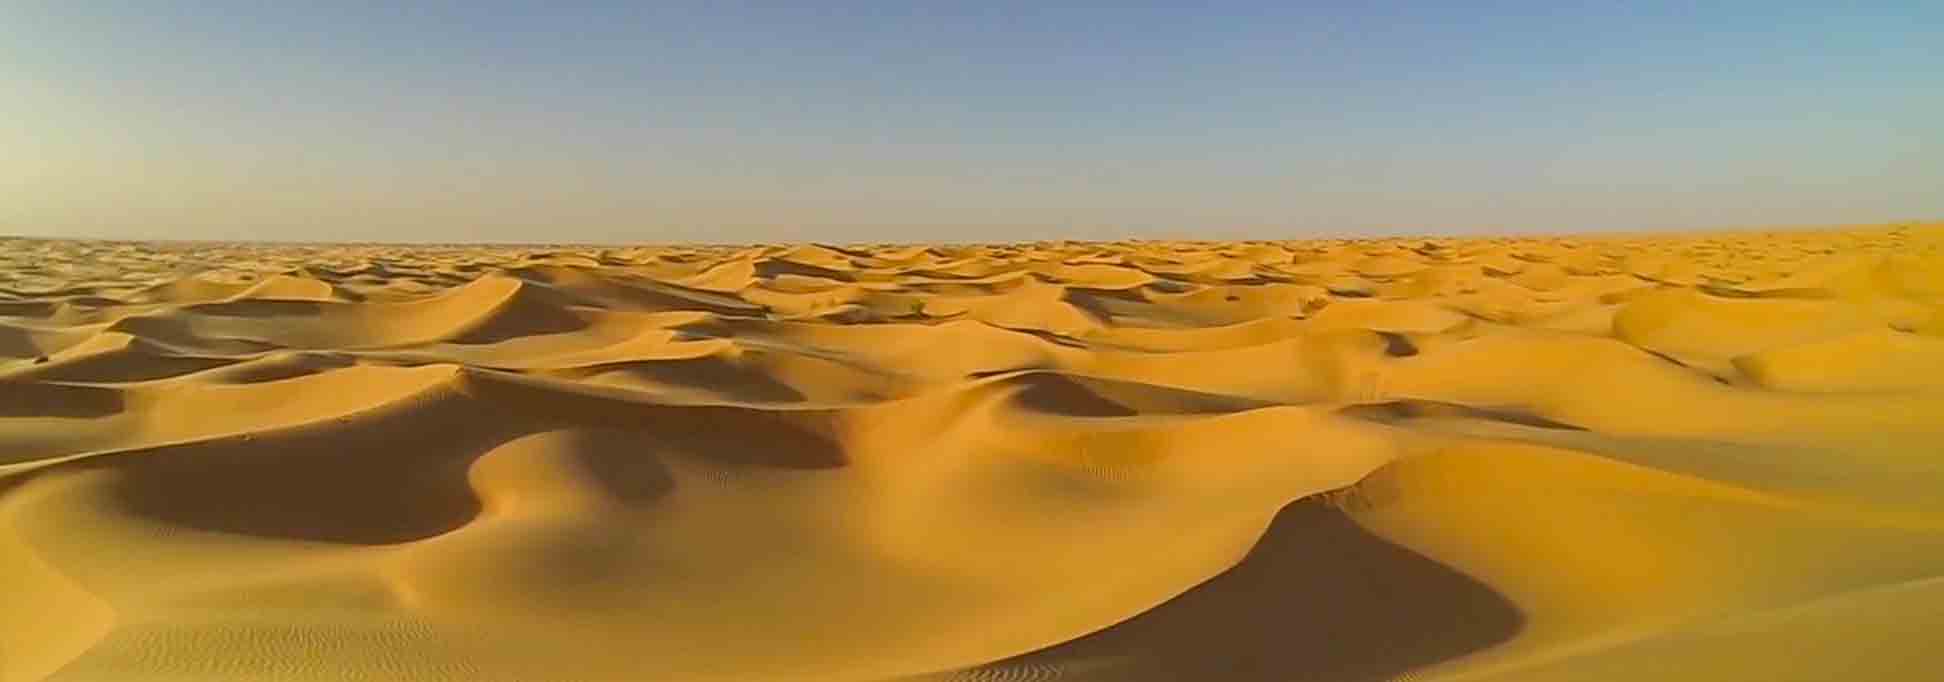 サハラ砂漠のアルジェリアの砂丘 